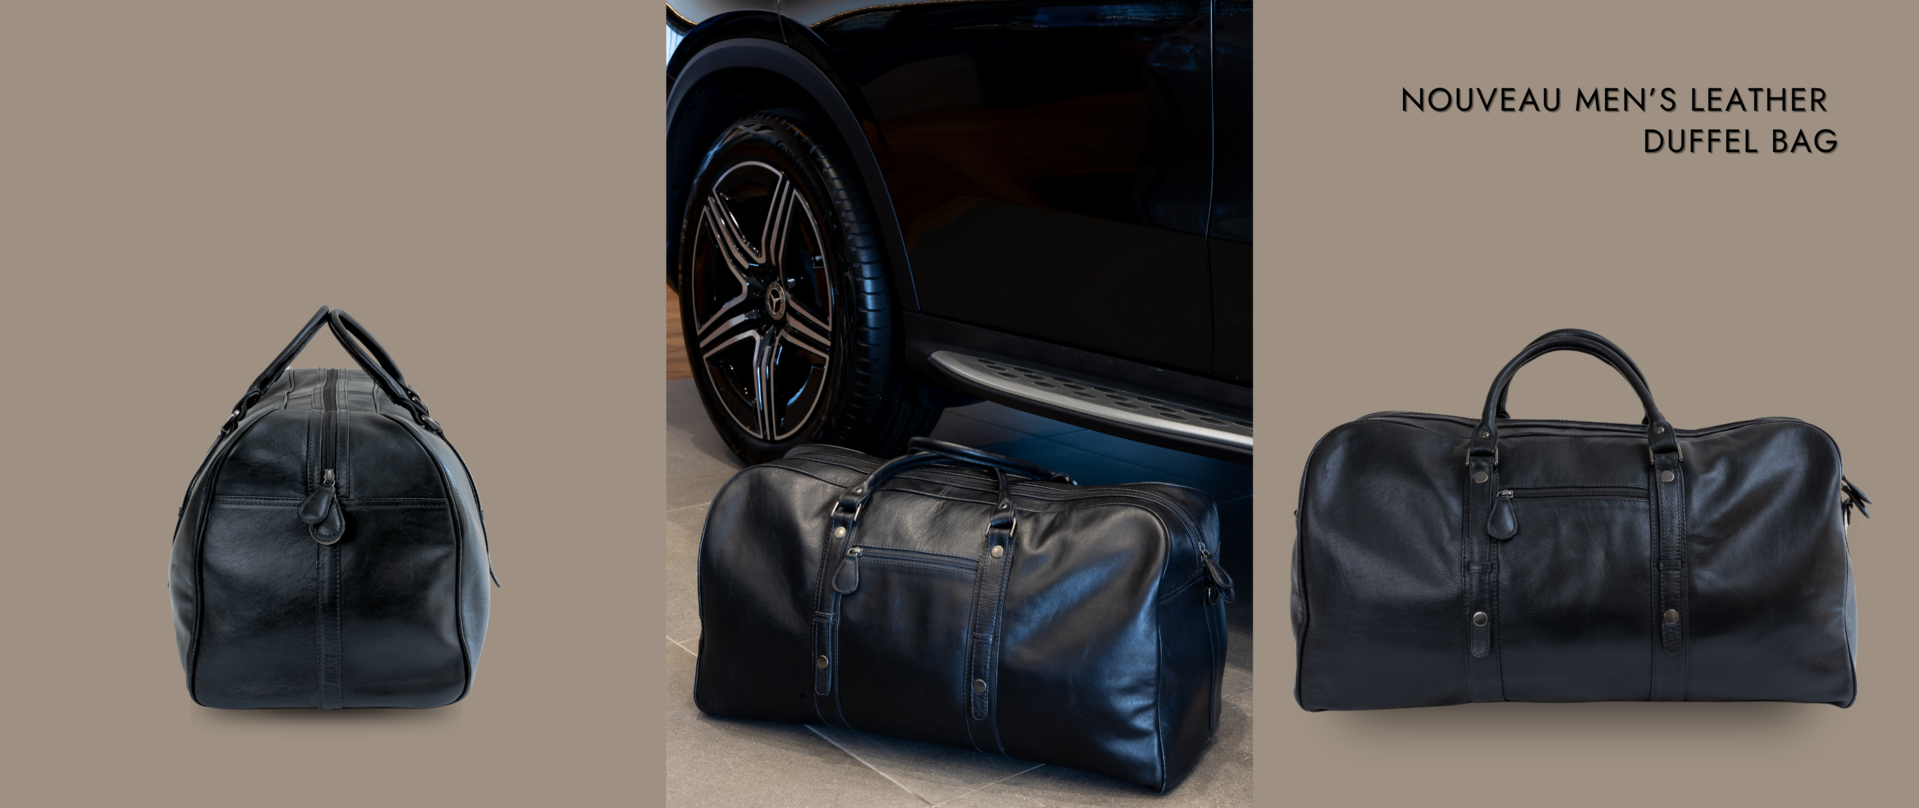 Nouveau Men’s Leather Duffel Bag